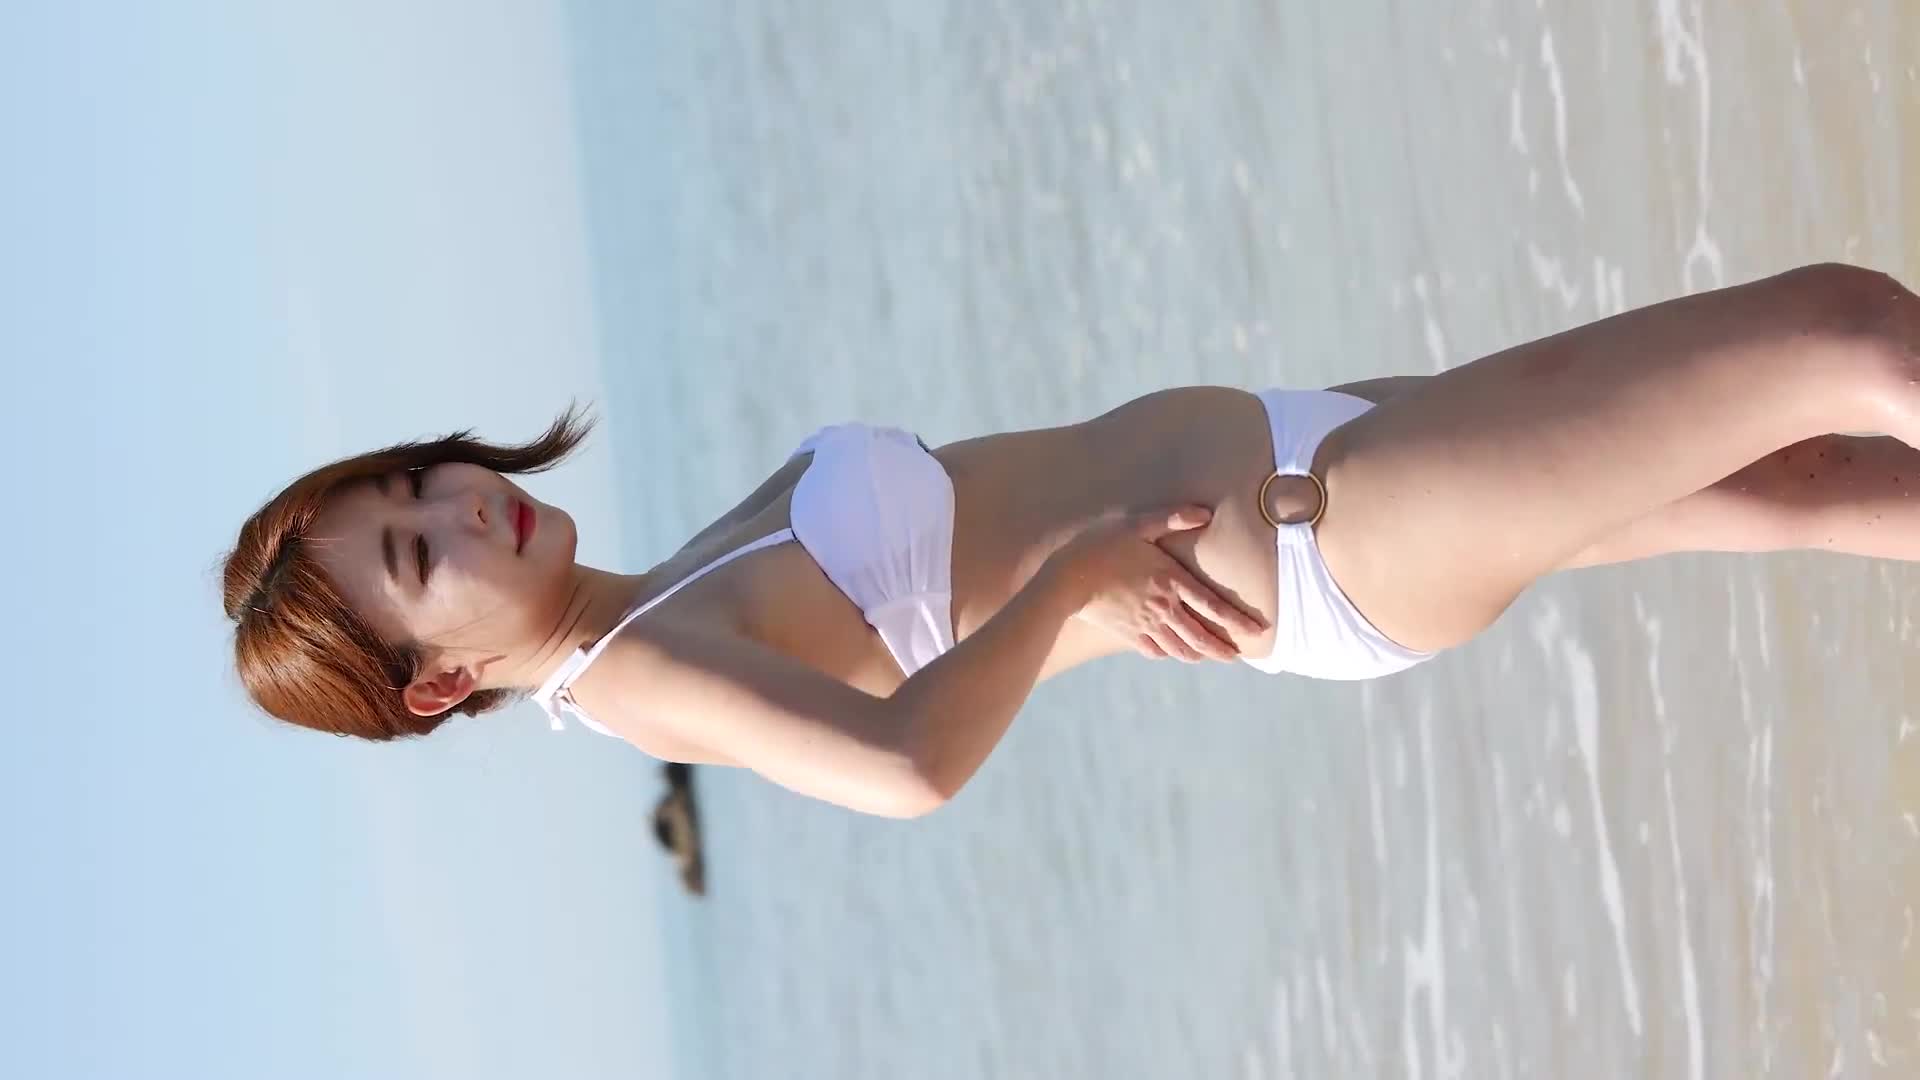 푸르른 날 밝은 햇살이 비치는 바닷가 해변에서 모델 도희(Do Hee) 비키니 화보  [4K60P]